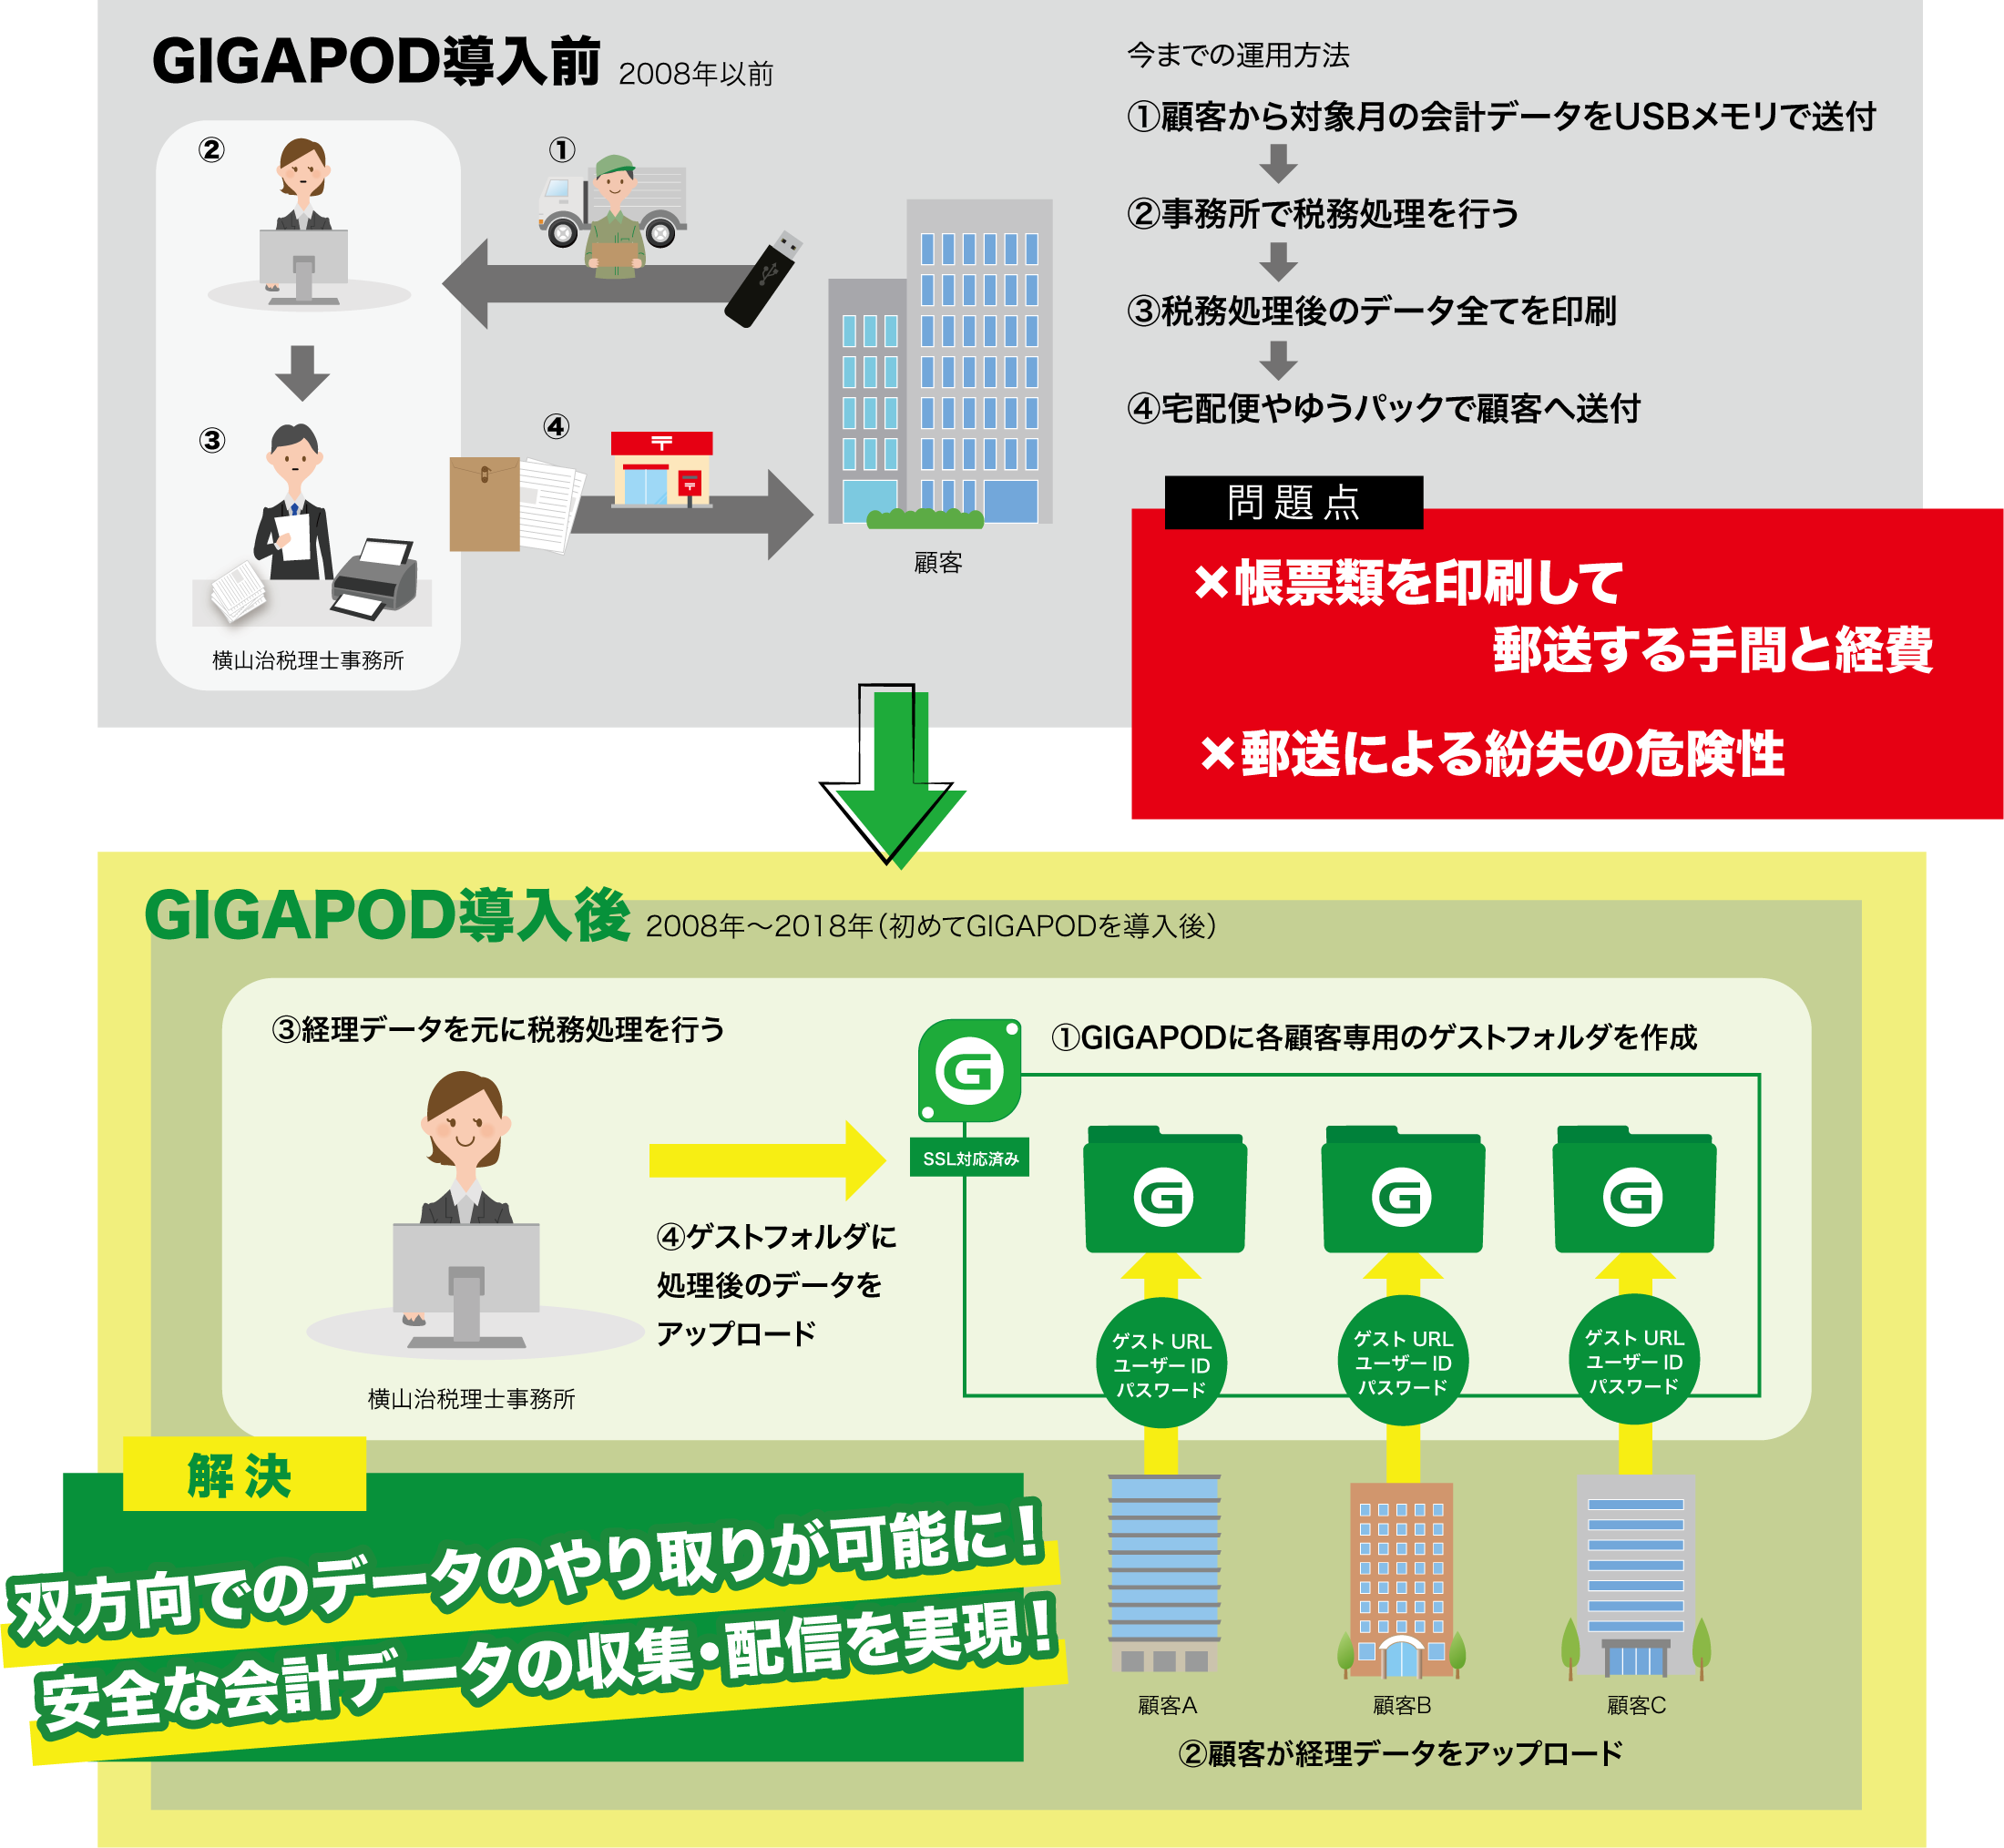 GIGAPOD5導入 横山治税理士事務所